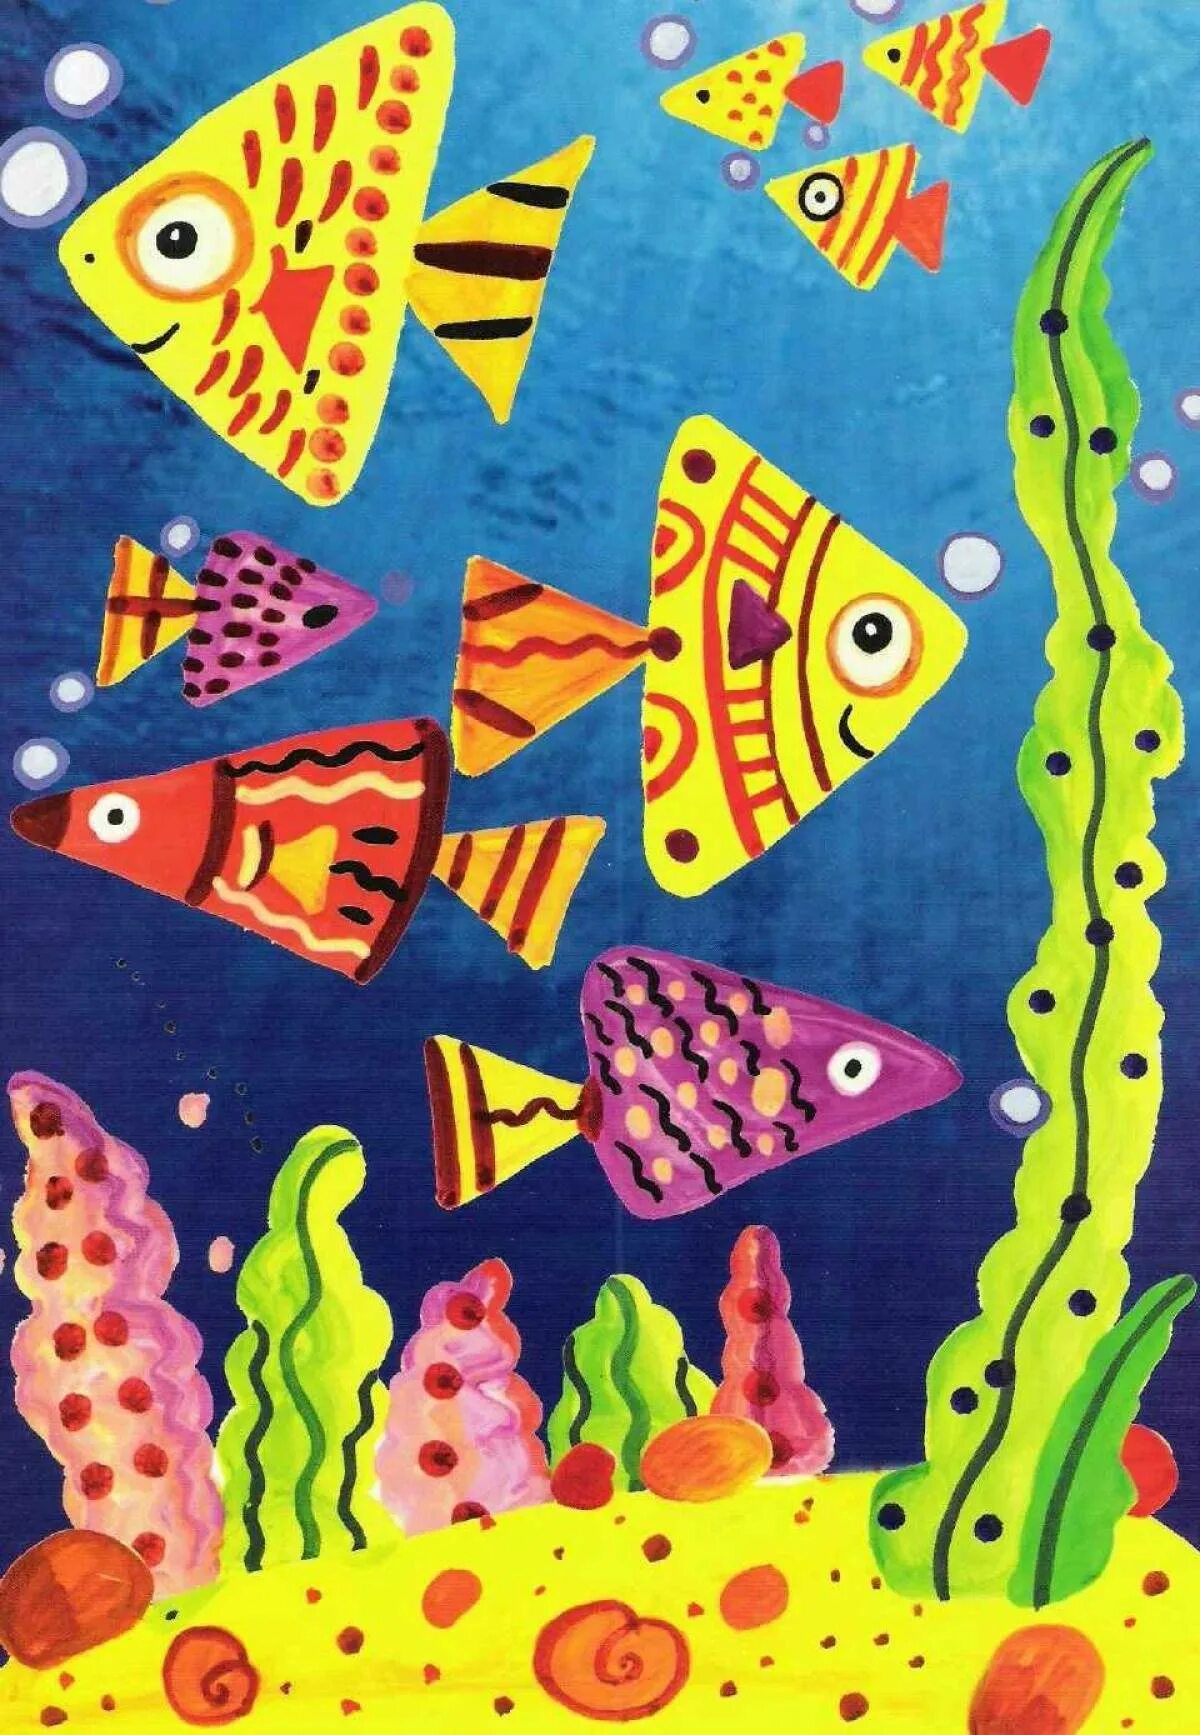 Рисование для детей 5 лет. Рисование красками для детей. Рисование с детьми 5 лет красками. Рыбка для рисования детям. Рыбки играют рыбки сверкают